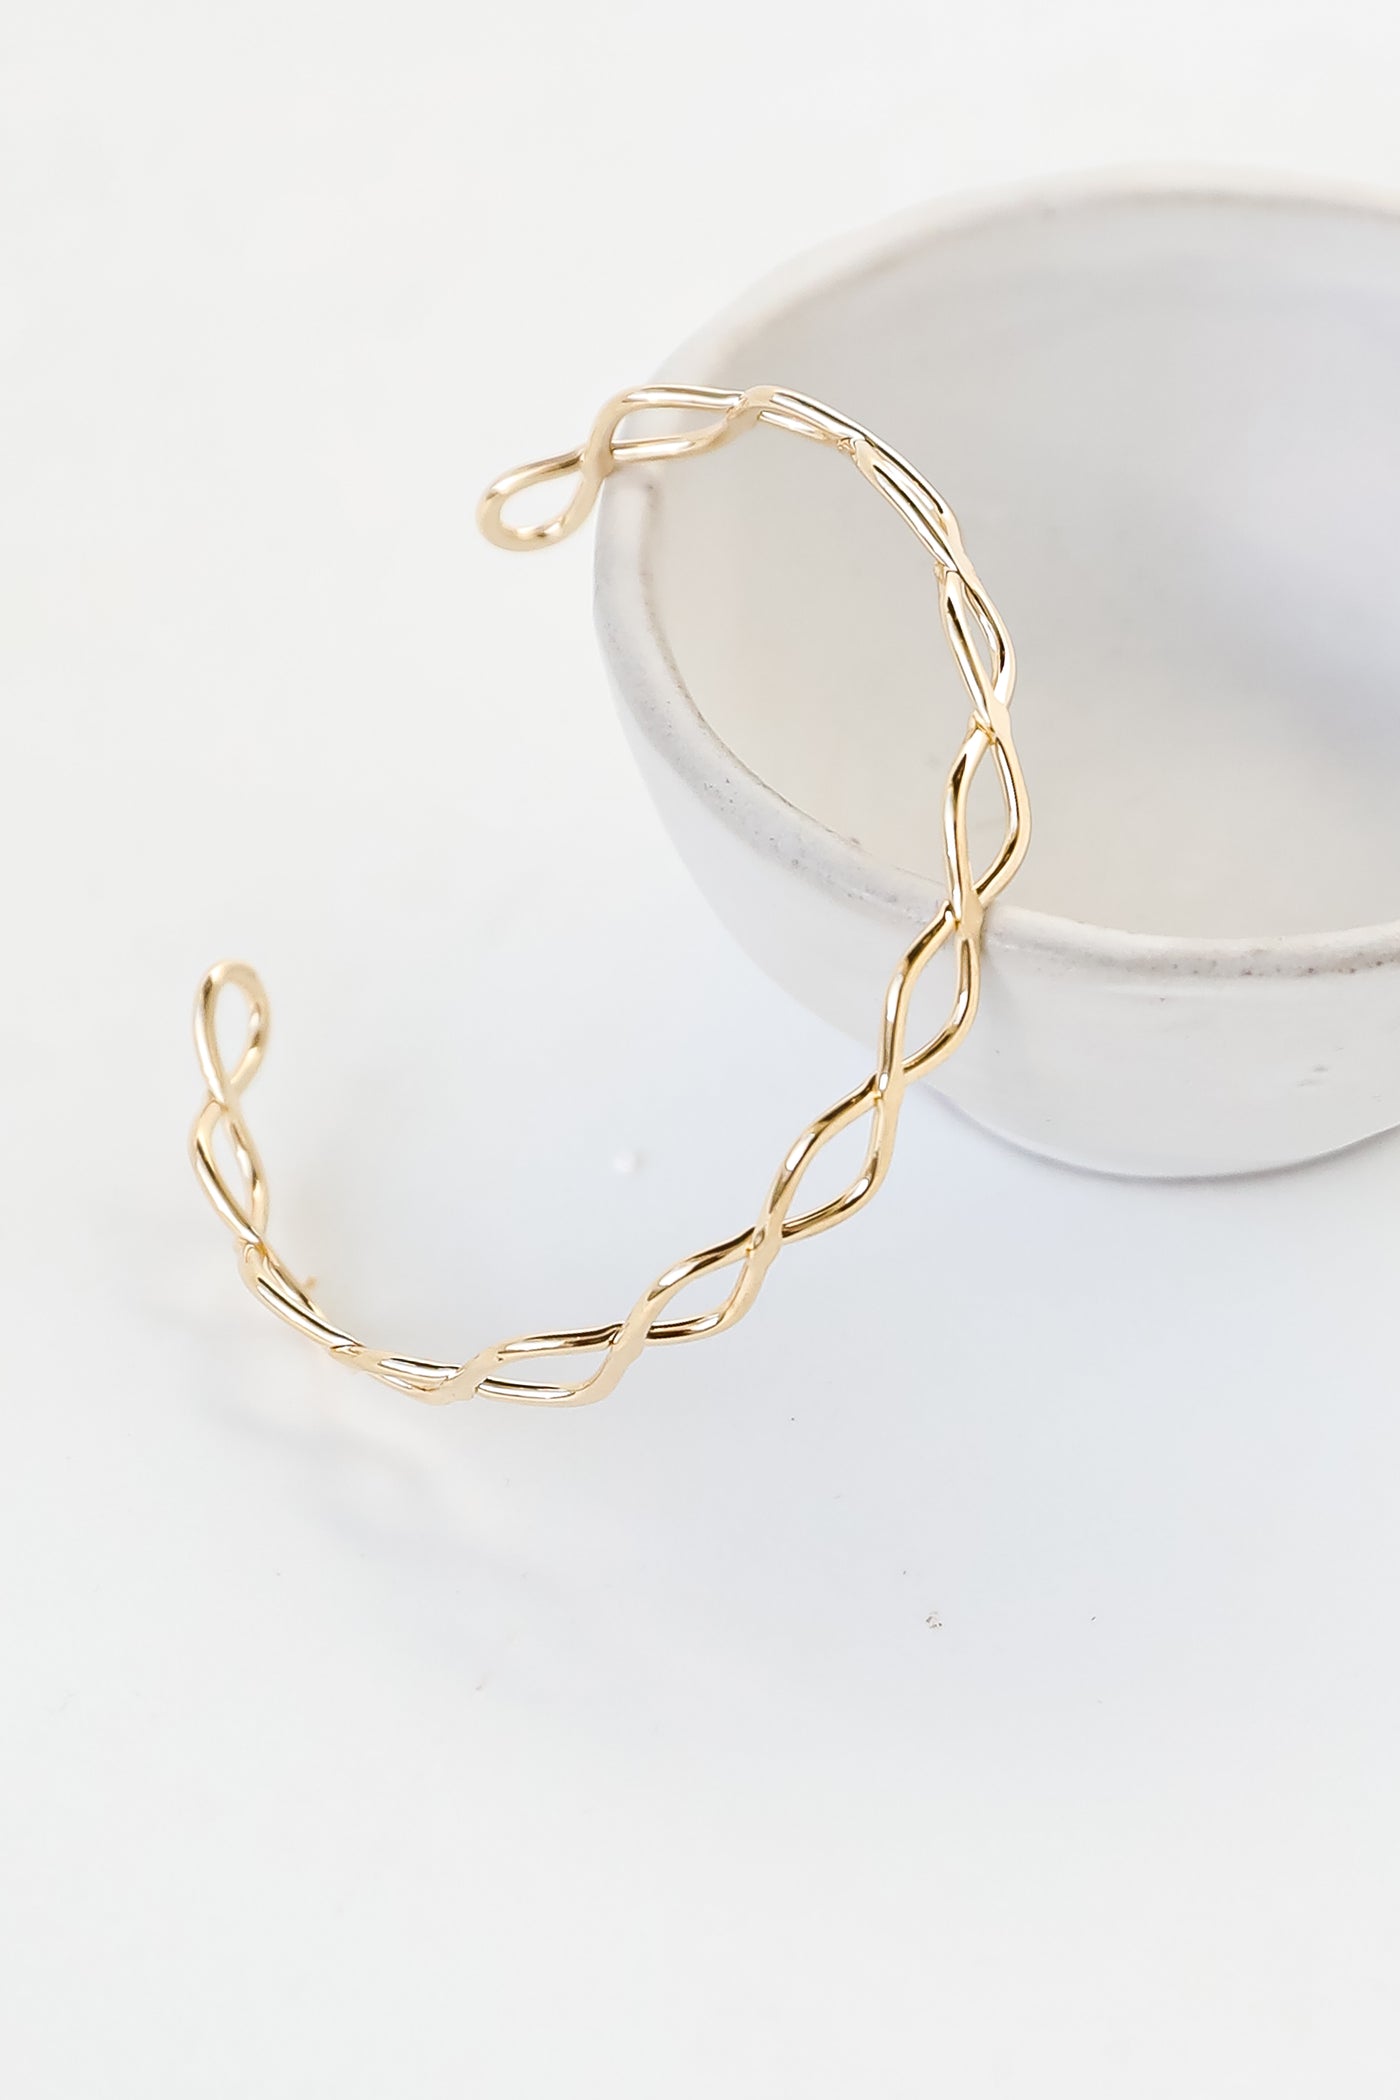 Gold Cuff Bracelet close up